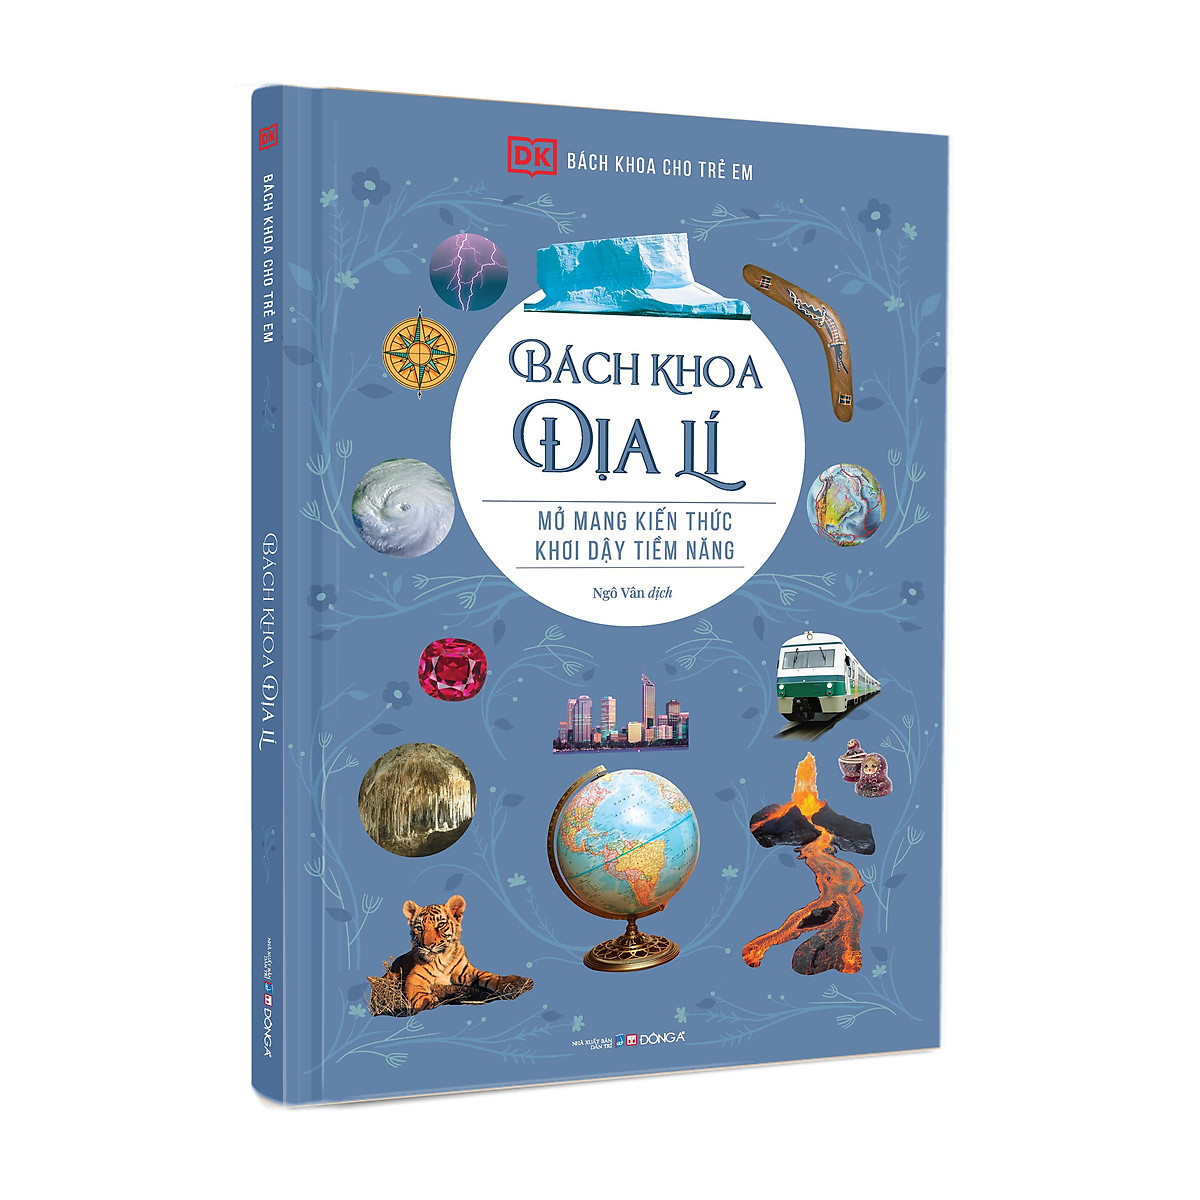 Bách khoa toàn thư dành cho trẻ em - Bách khoa toàn thư địa lý (Tái bản năm 2020)